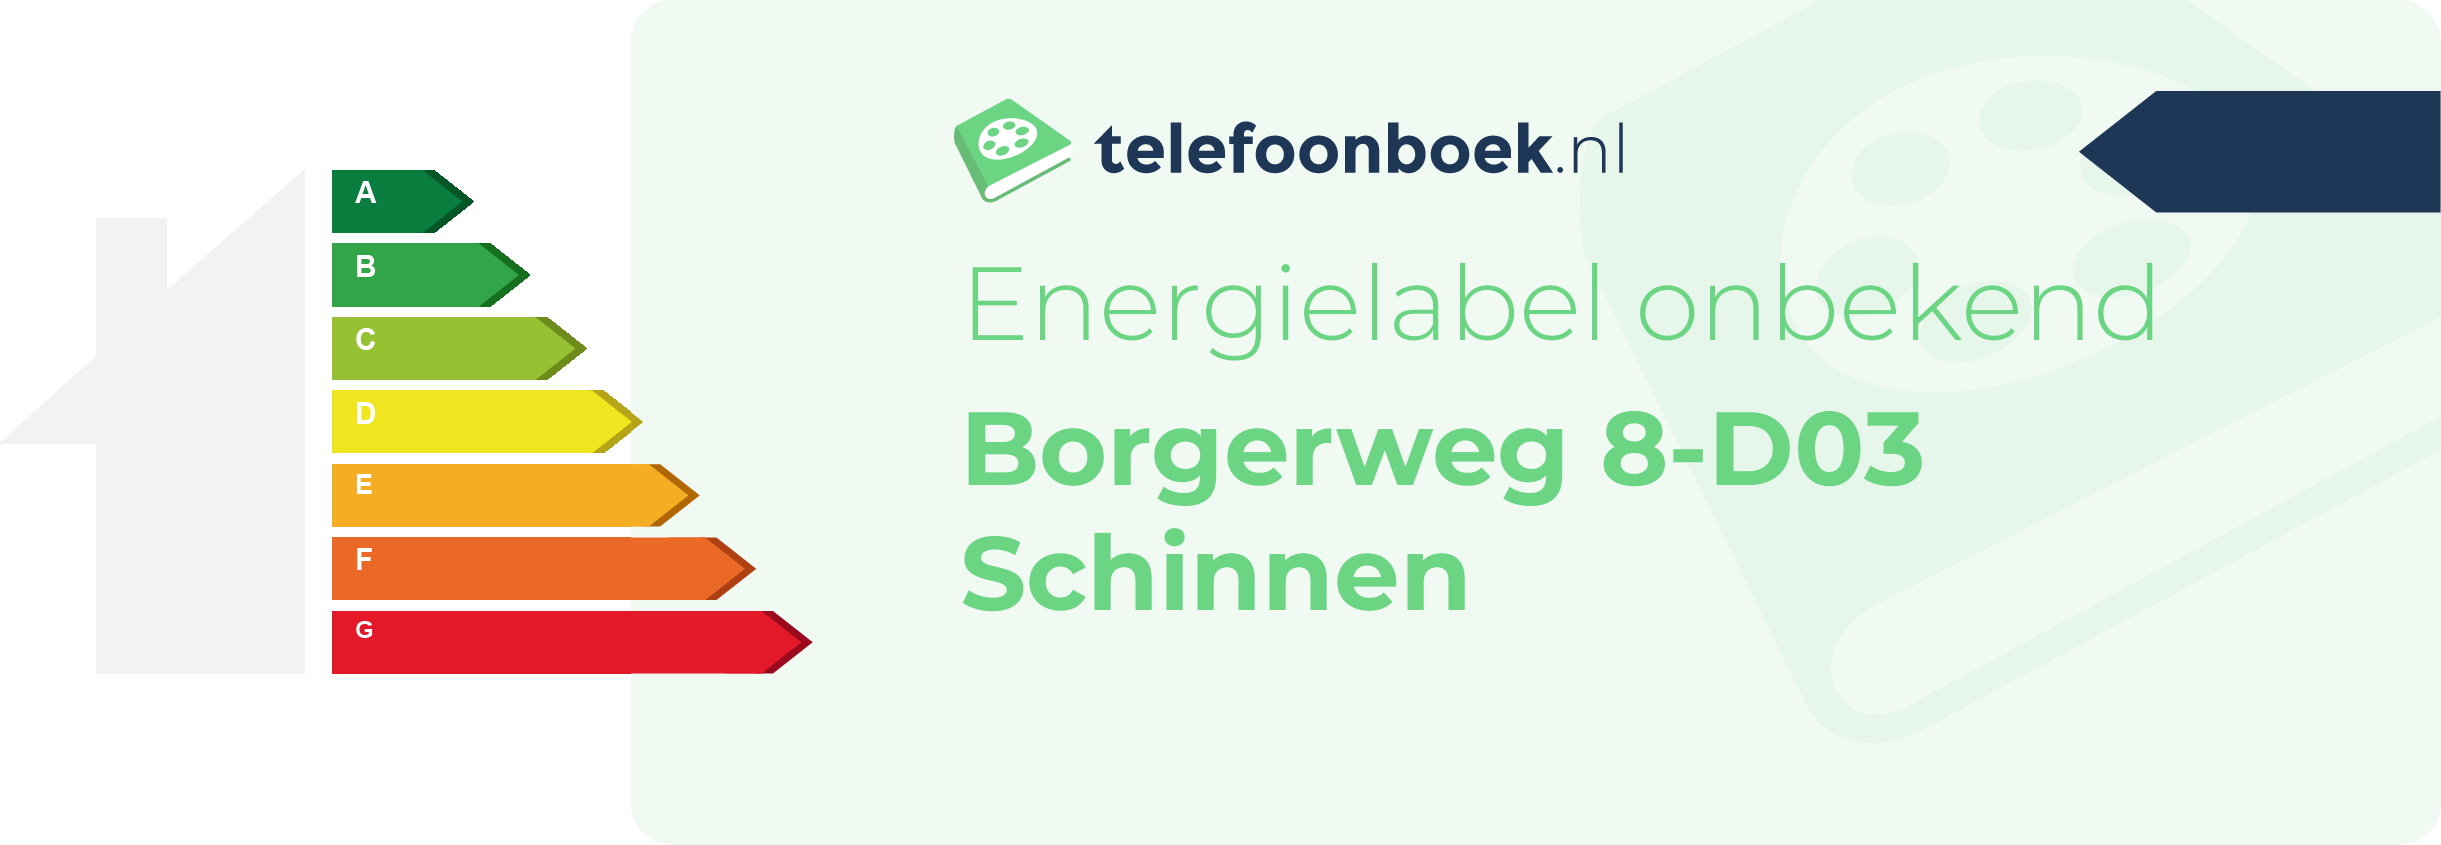 Energielabel Borgerweg 8-D03 Schinnen